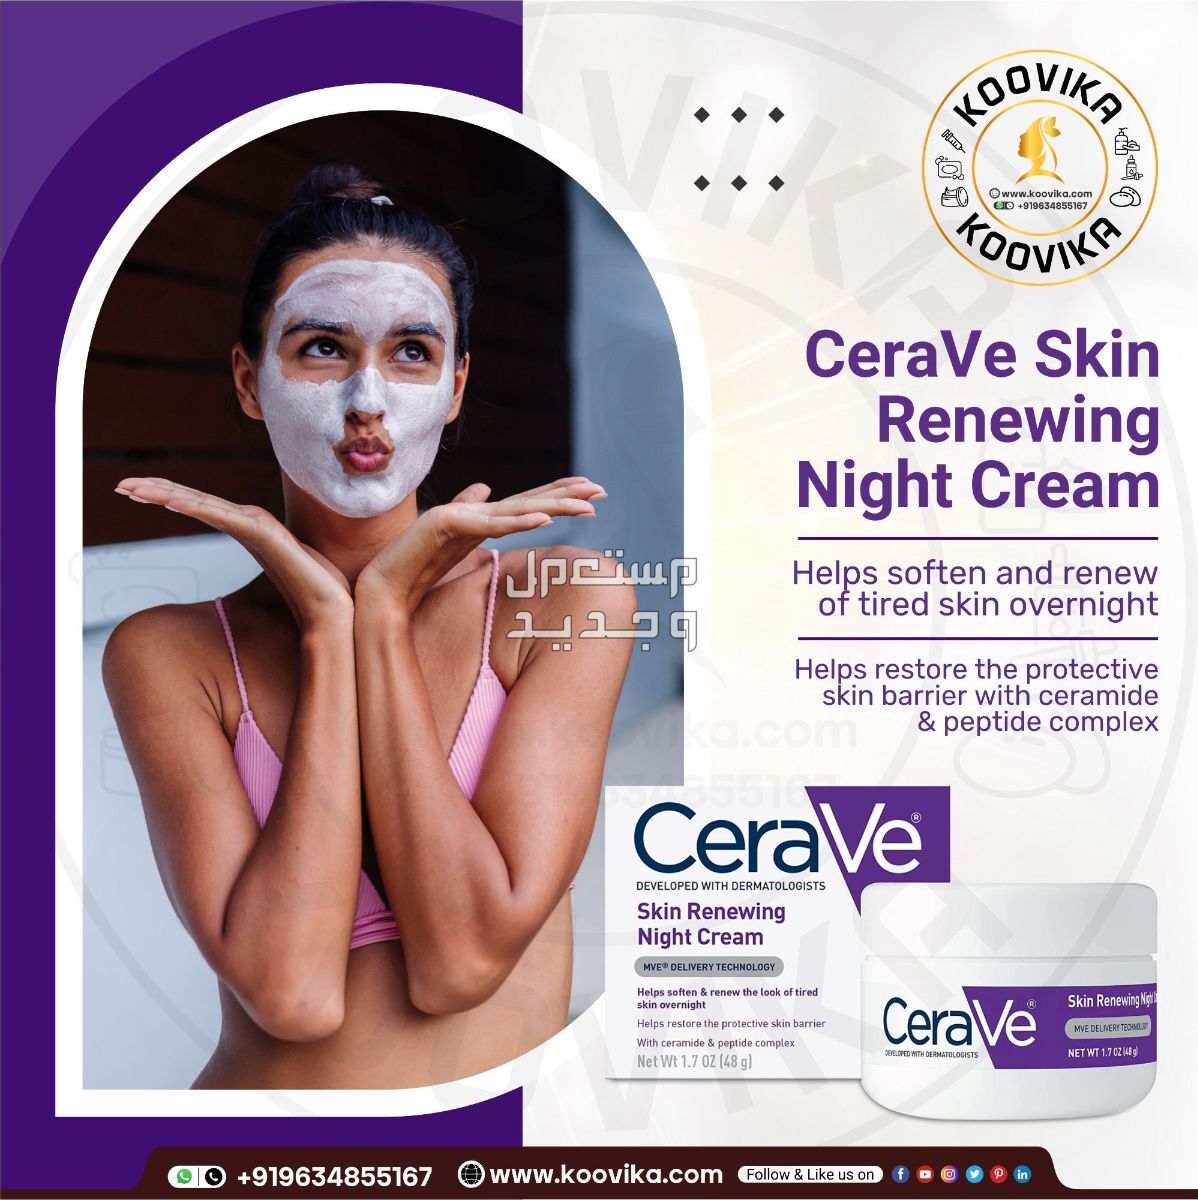 أفضل كريم ليلي للعناية بالبشرة لعام 2023 في الأردن شكل كريم ليلي من CeraVe Skin Renewing Night Cream على البشرة